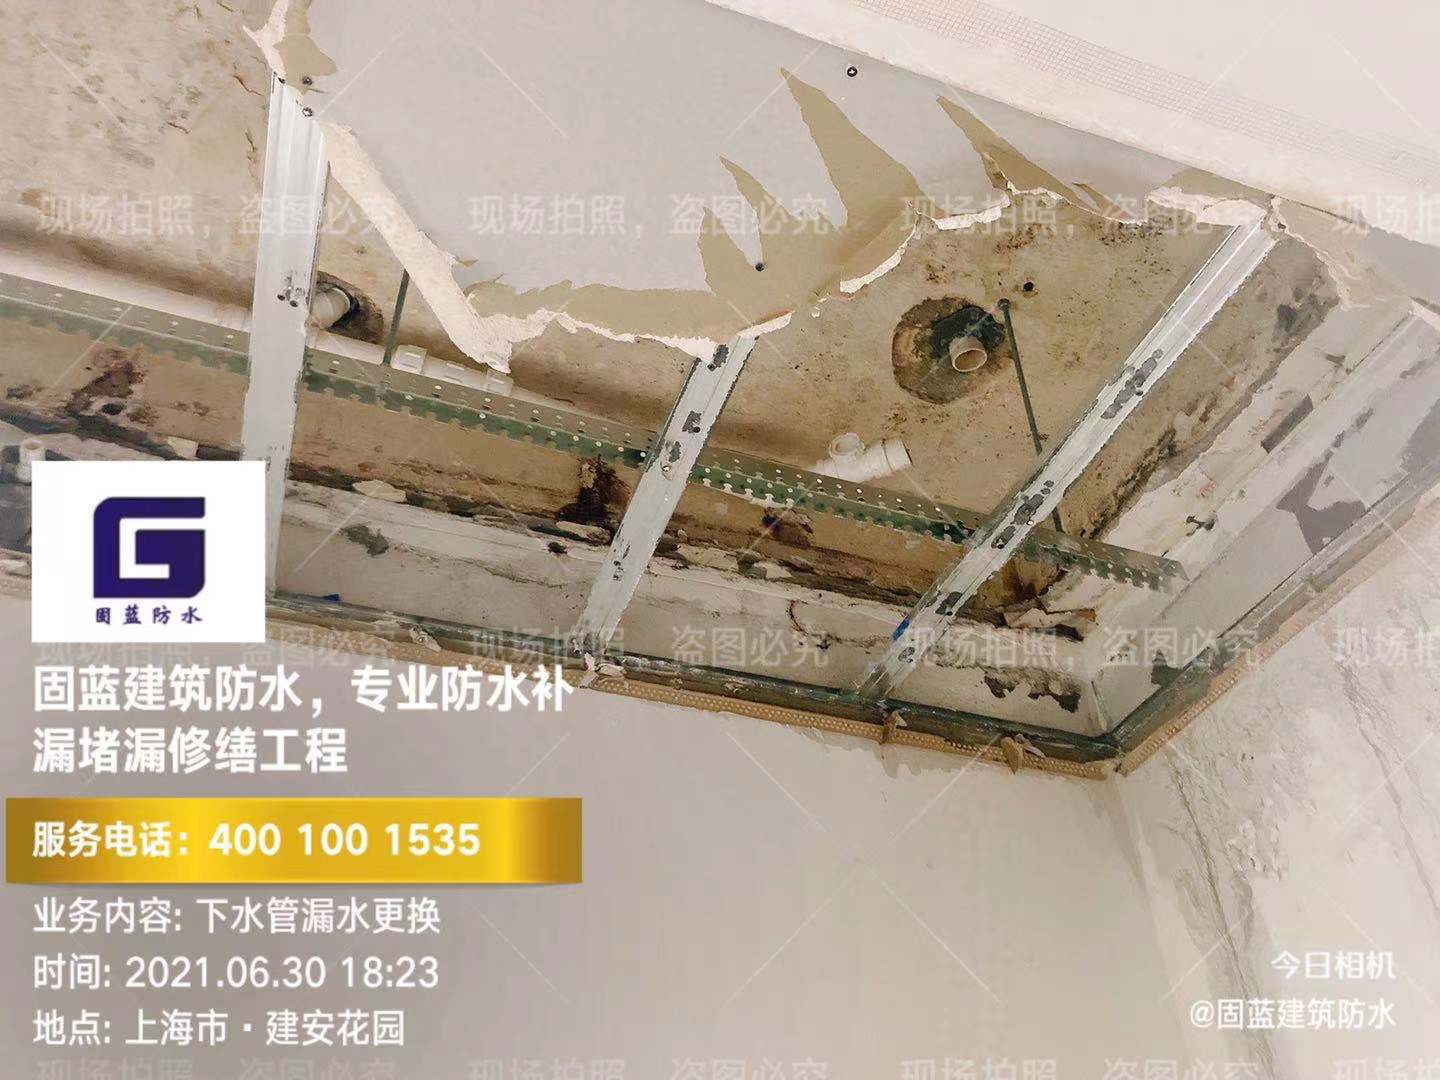 上海固蓝建筑变形缝伸缩缝沉降缝渗漏水维修补漏堵漏